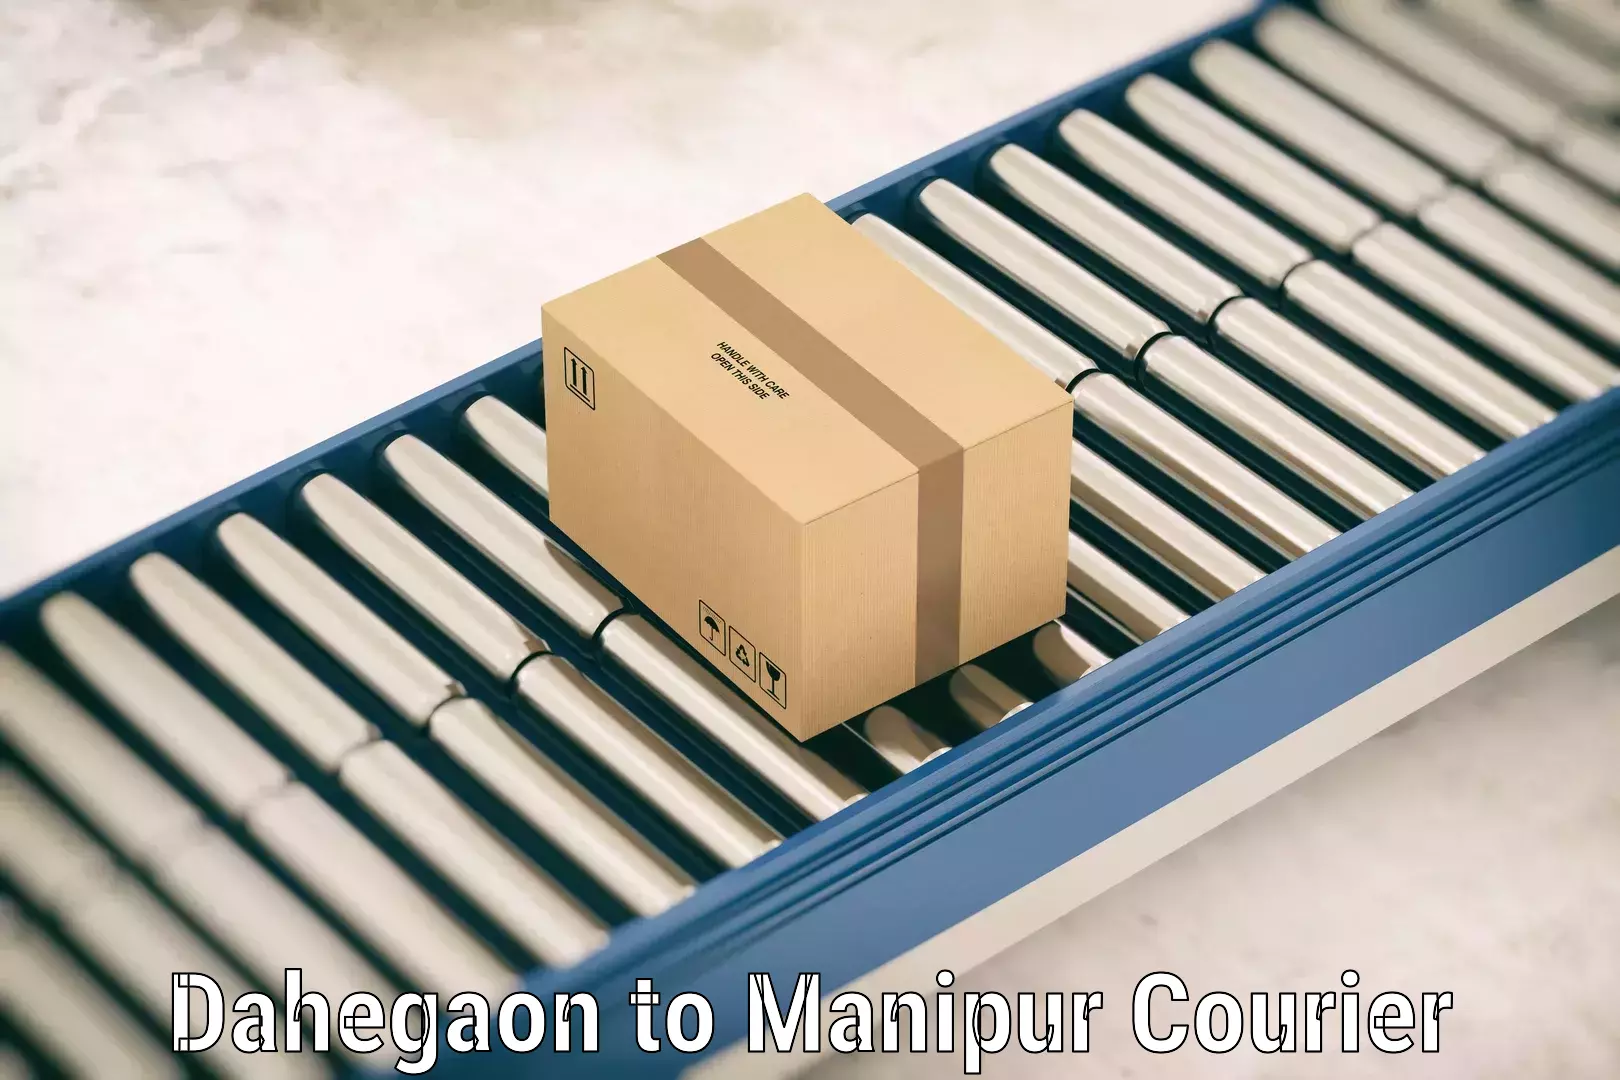 Baggage transport scheduler Dahegaon to Manipur